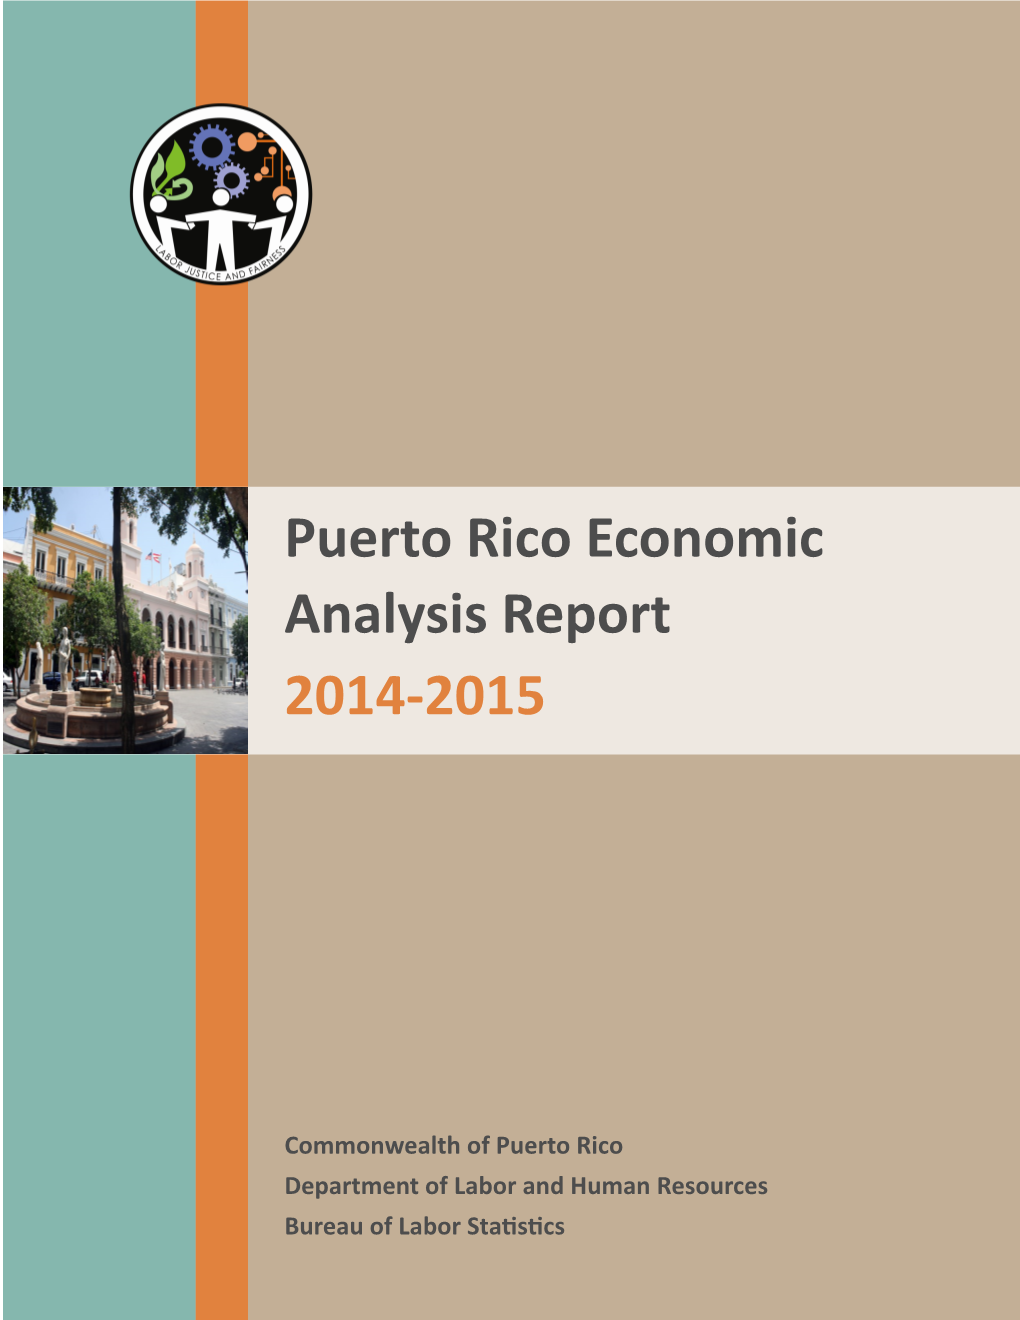 Puerto Rico Economic Analysis Report 2014-2015